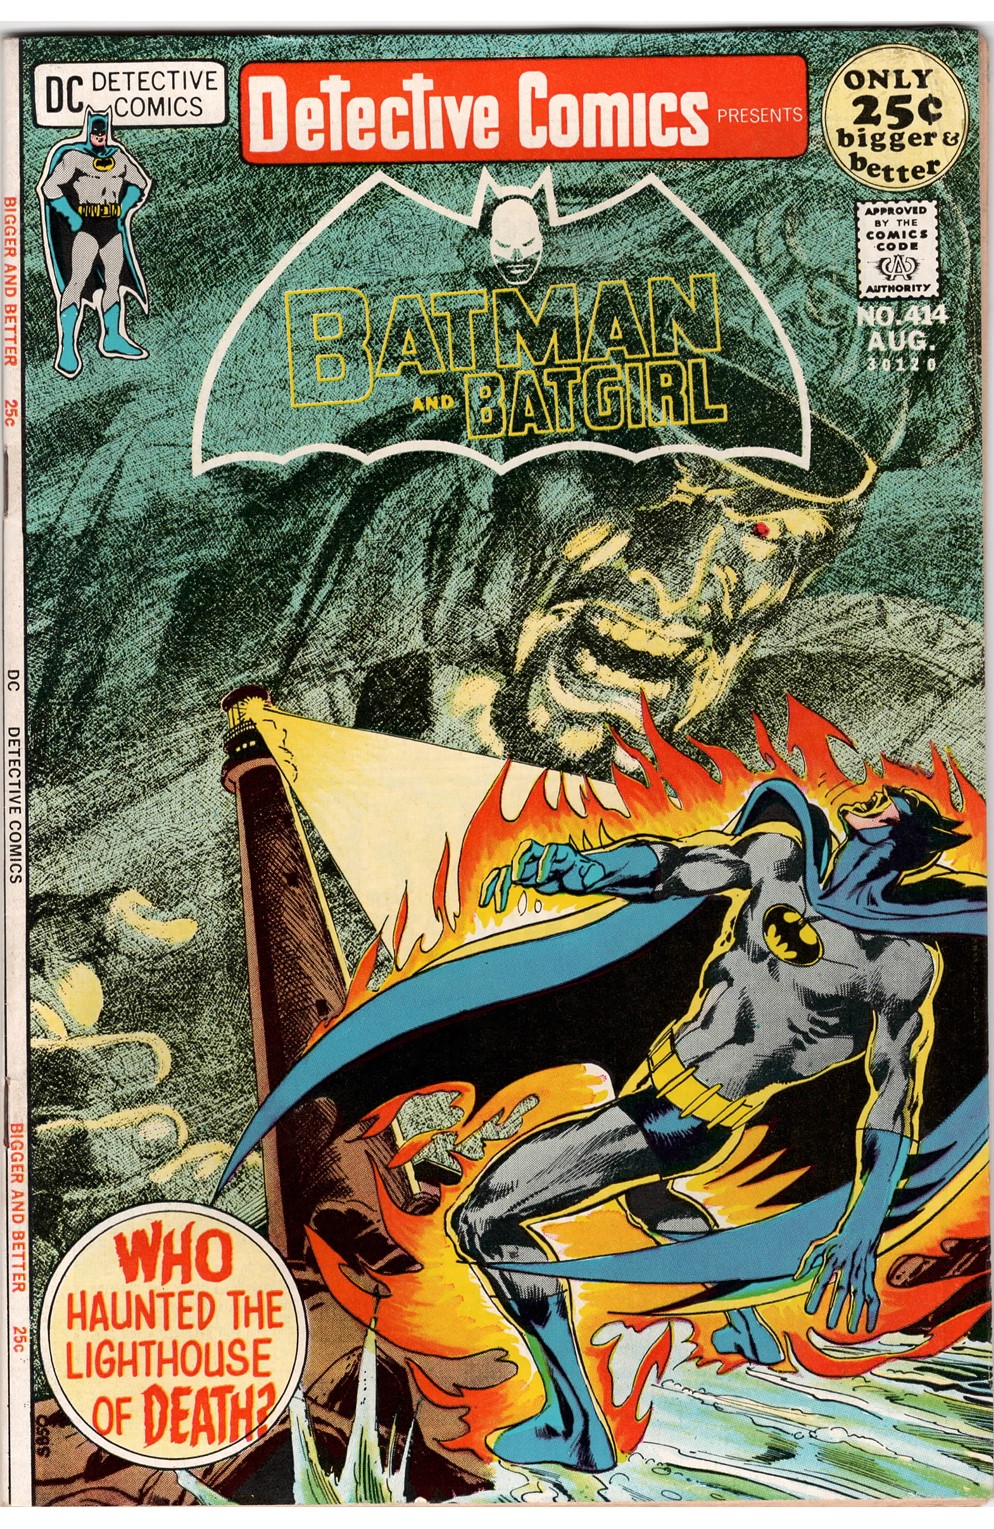 Detective Comics #0414